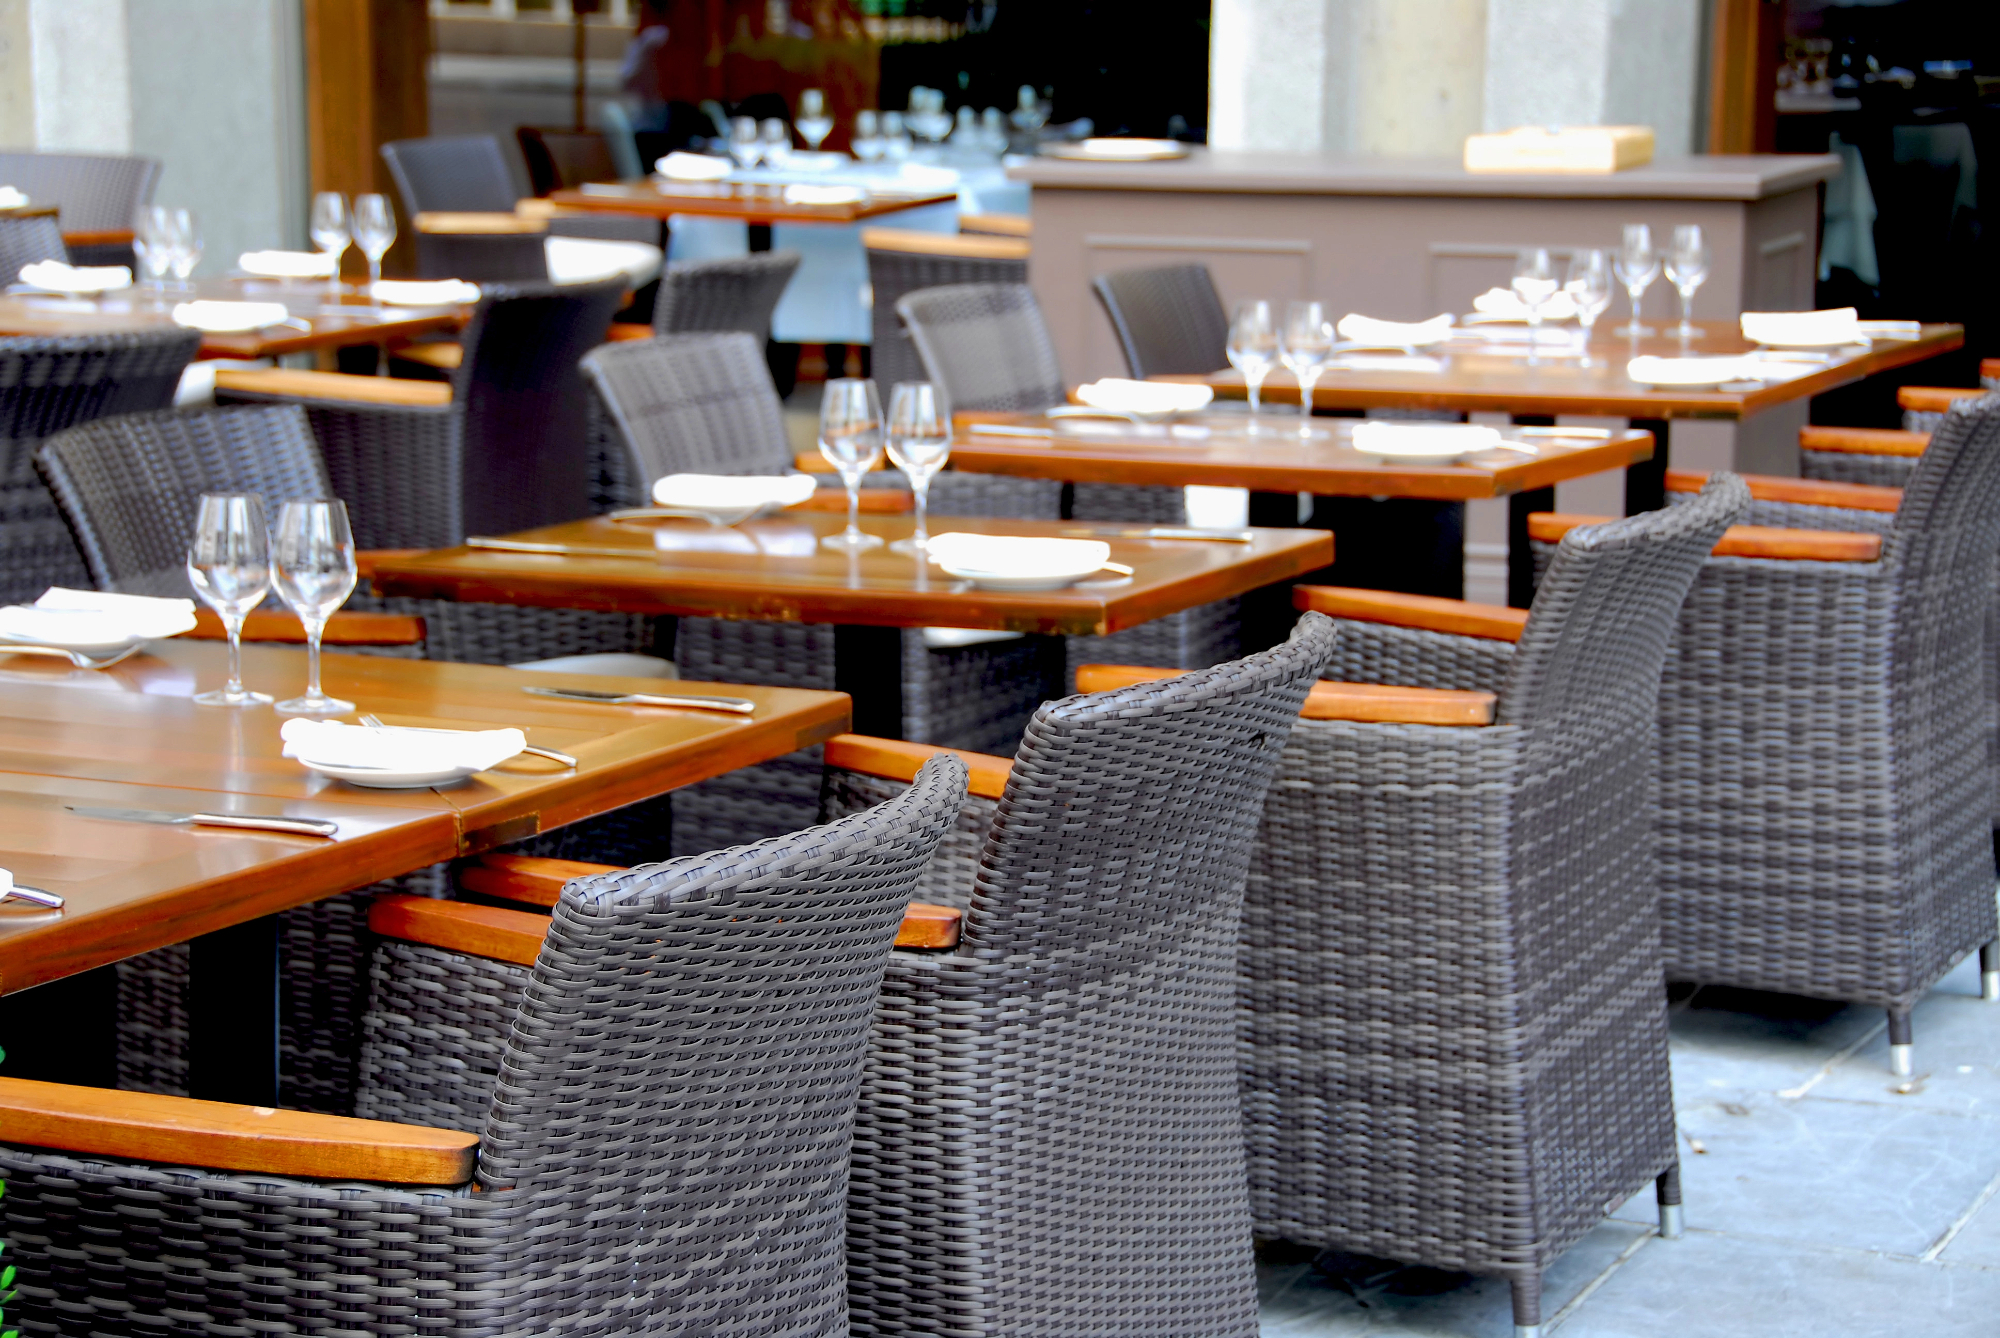 Nekatere restavracije Izola zahtevajo rezervacijo mize